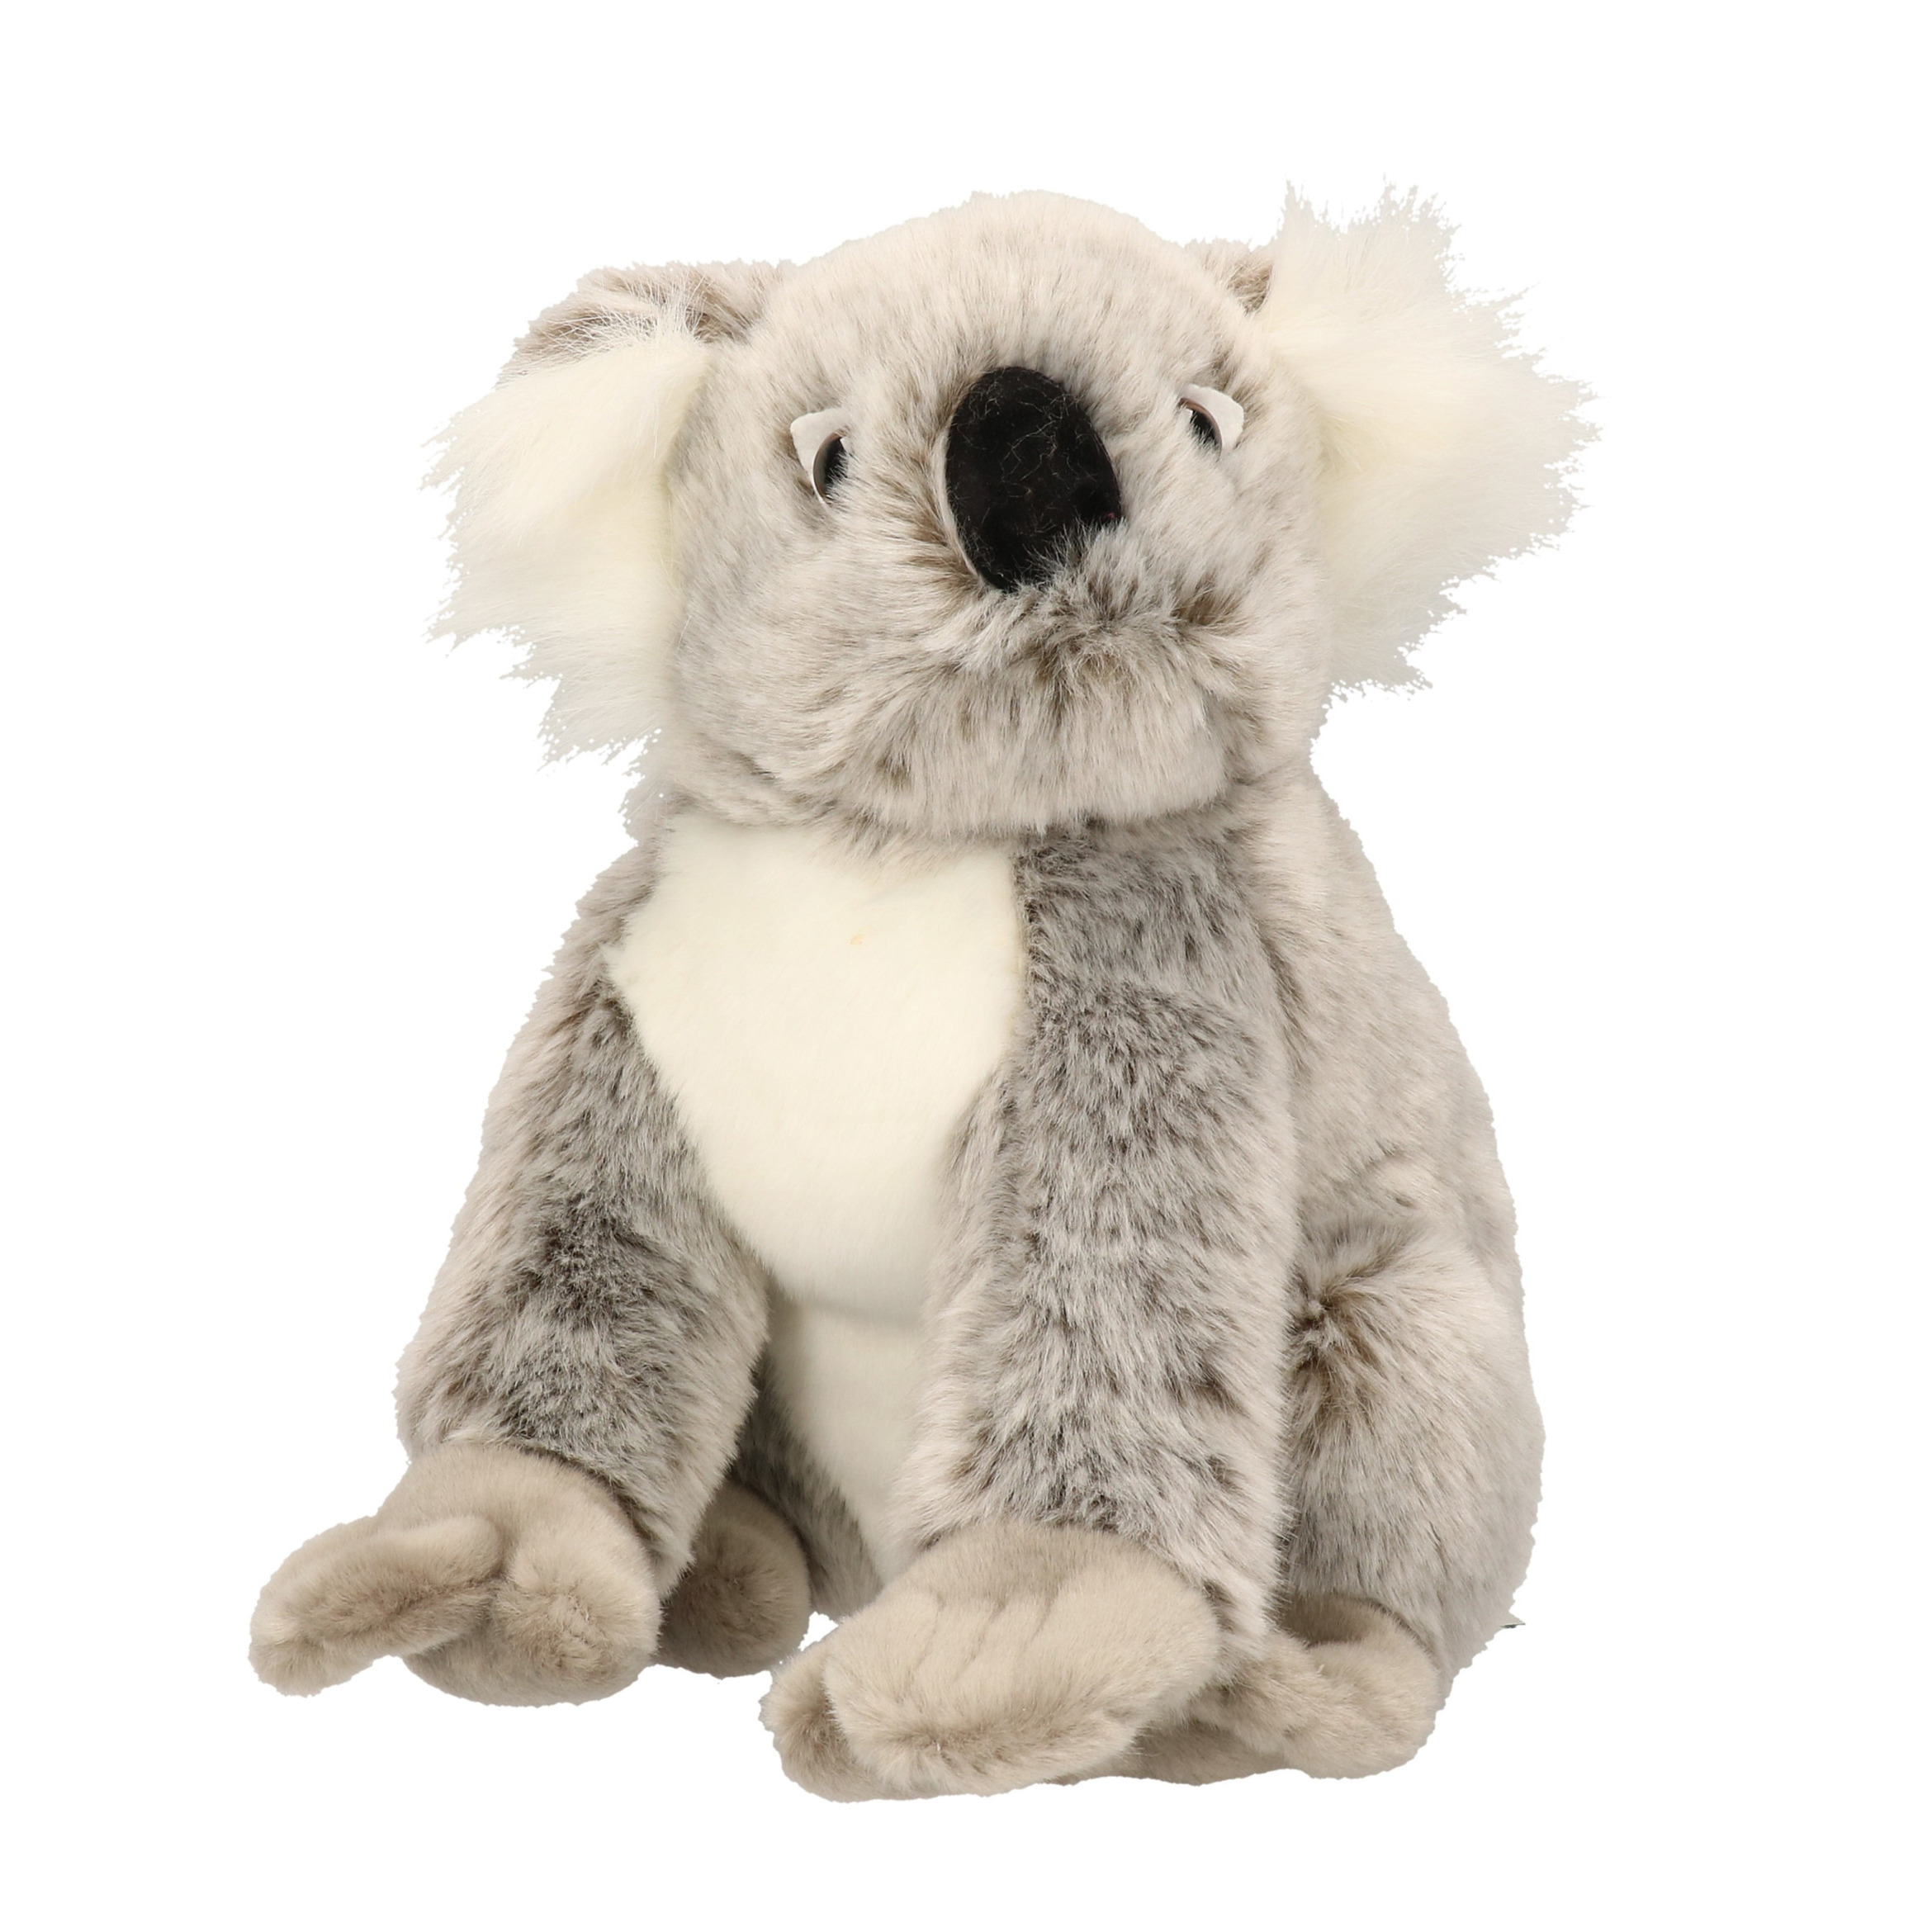 Knuffeldier koala 25 cm